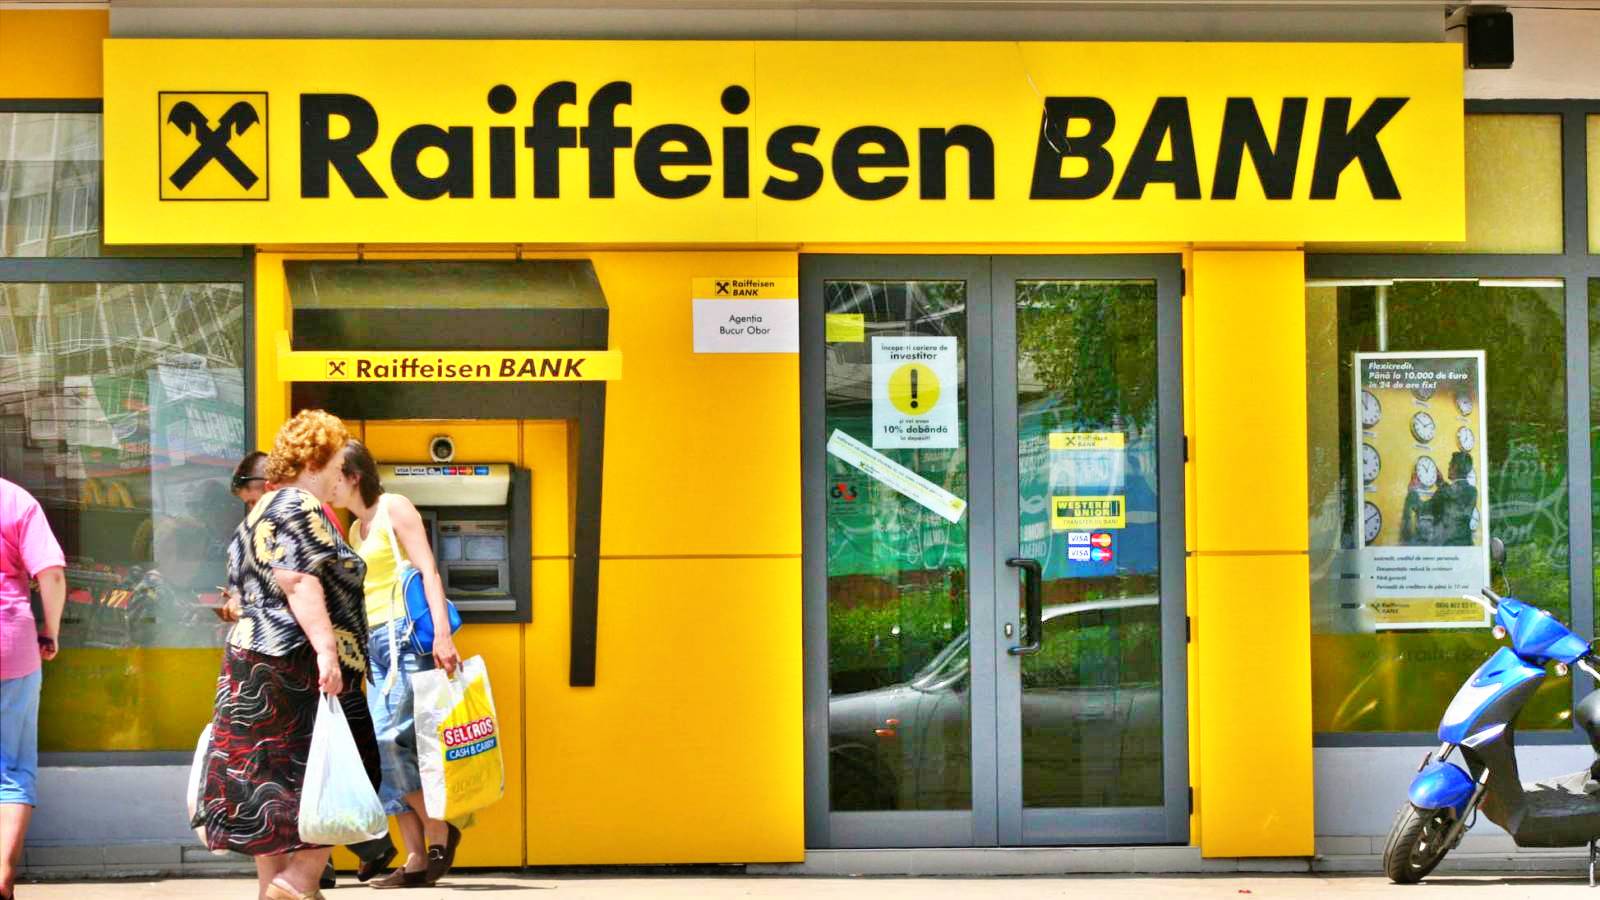 Banque Raiffeisen Avis IMPORTANT à TOUS les Roumains dans tout le pays